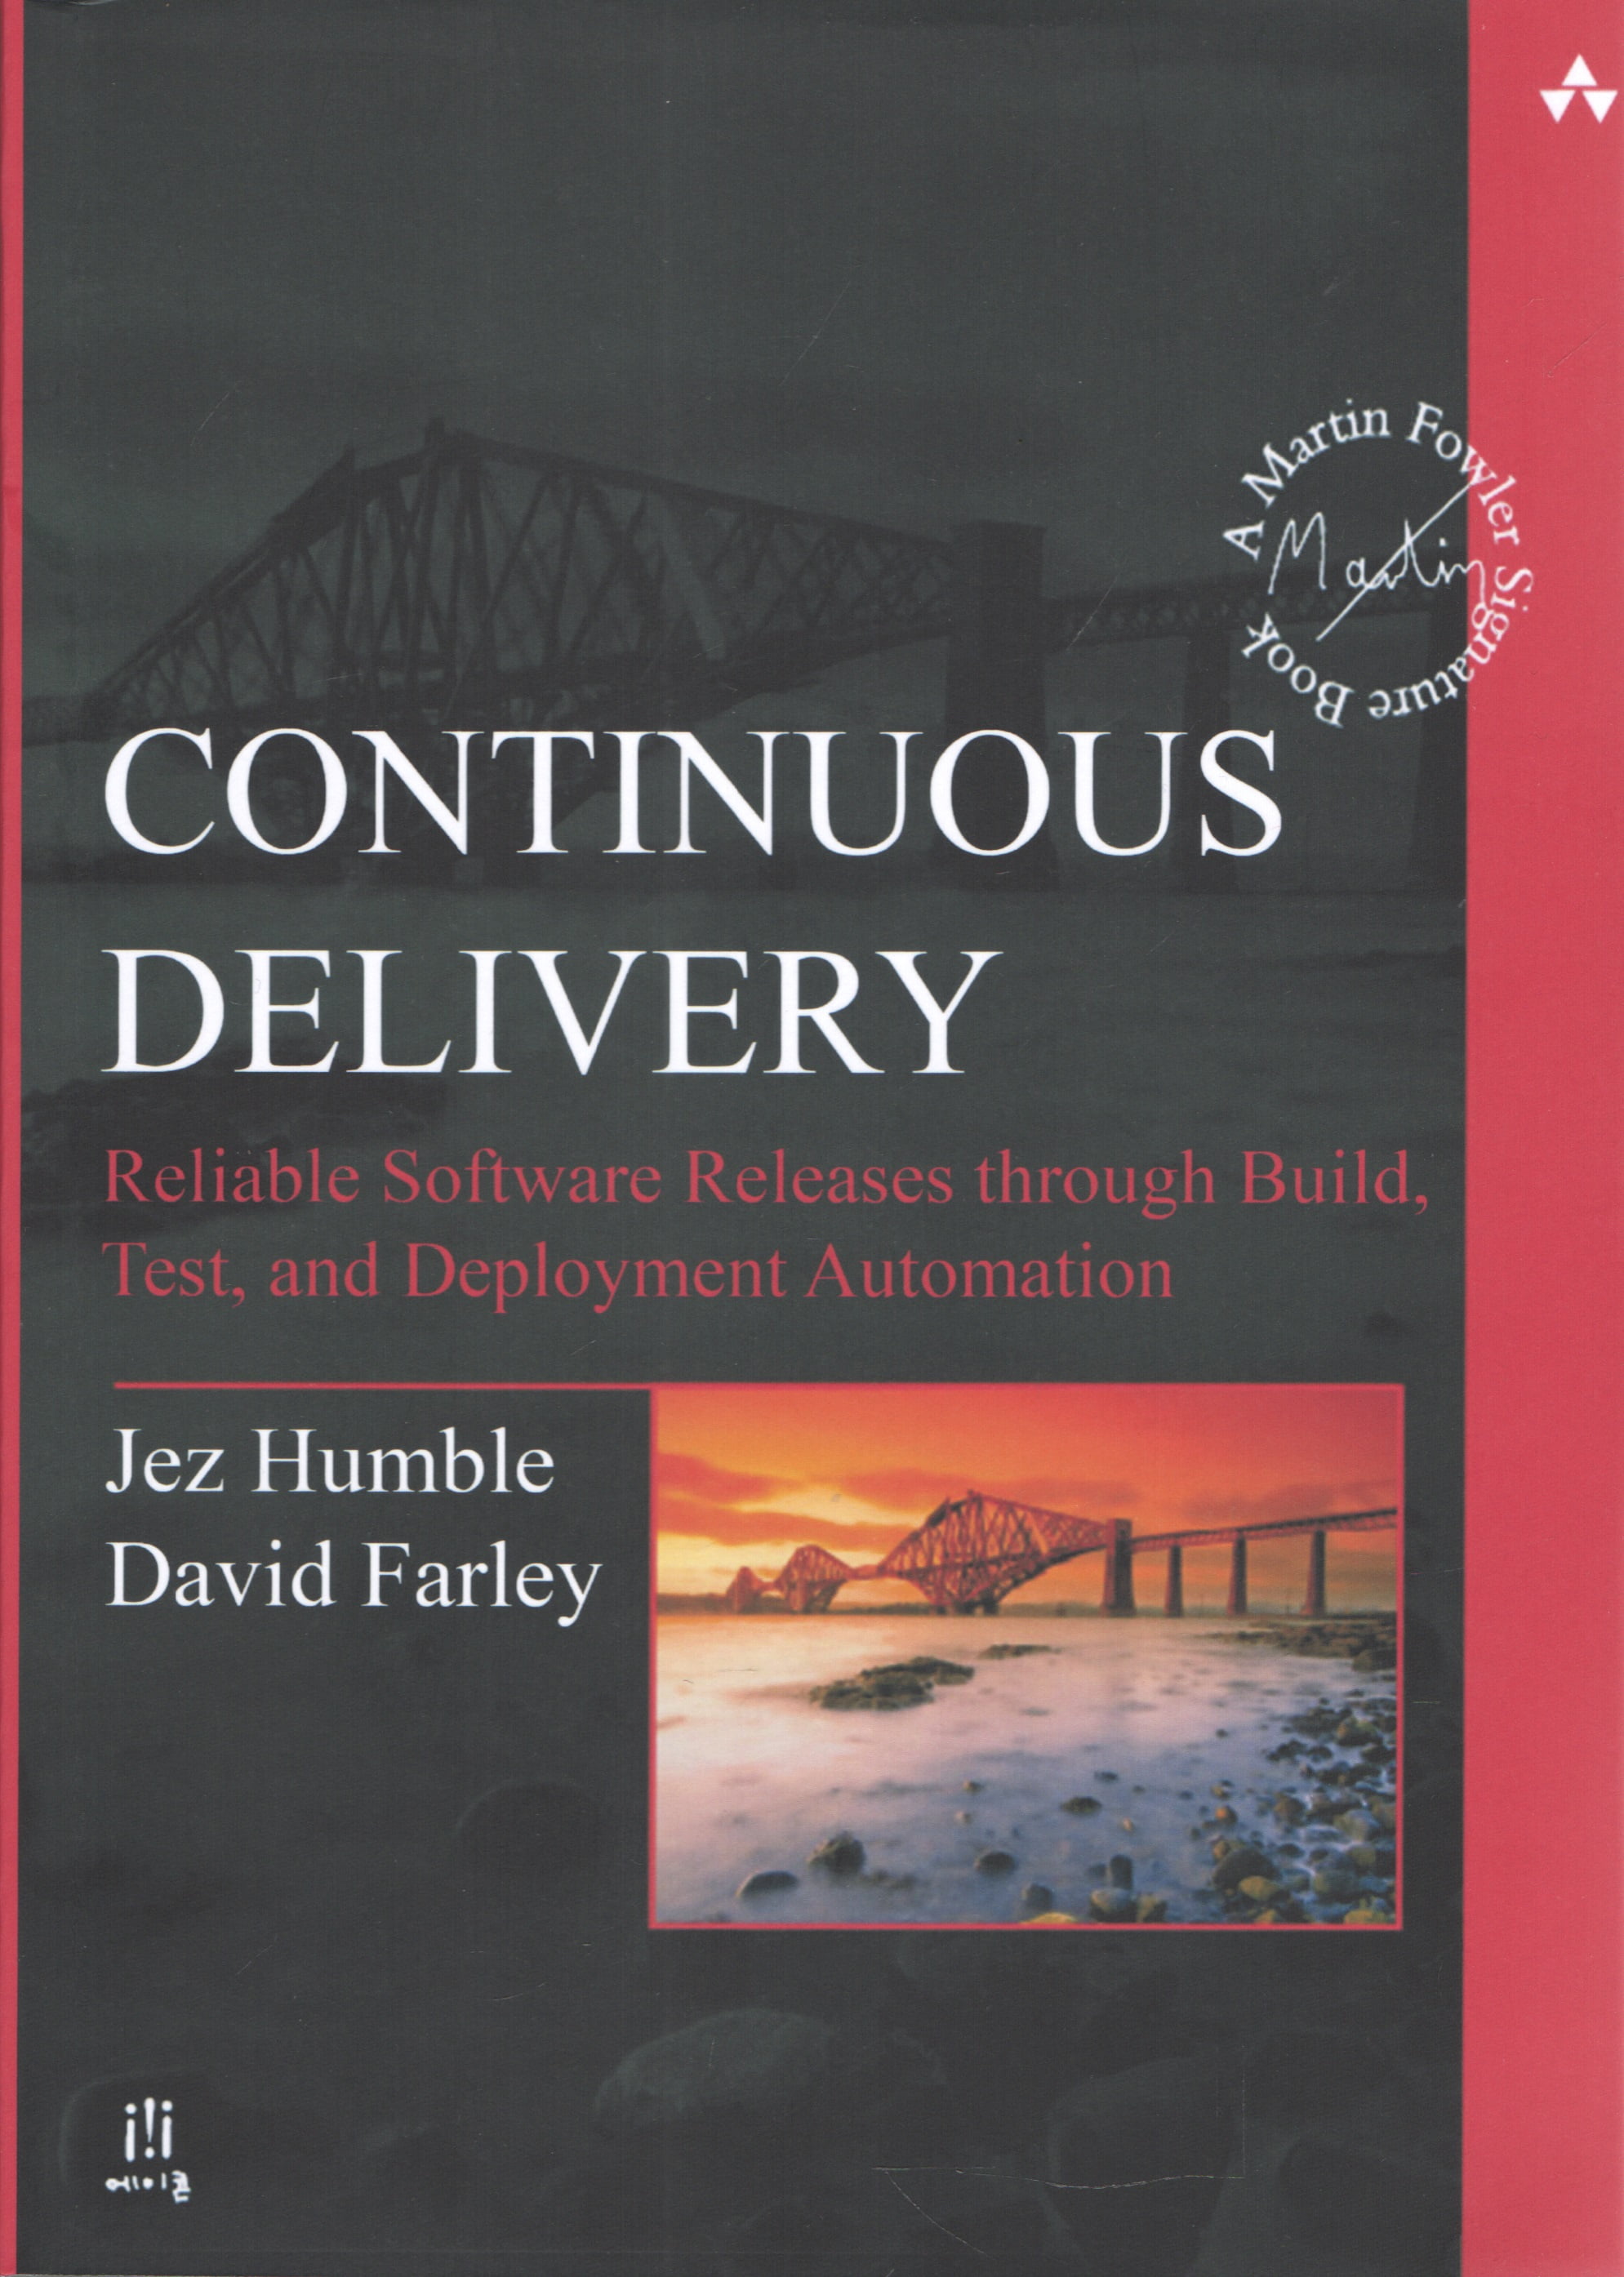 Continuous Delivery: Reliable Software Releases Build through, Test, and Deployment Automation - Разработка ПО, управление проектами